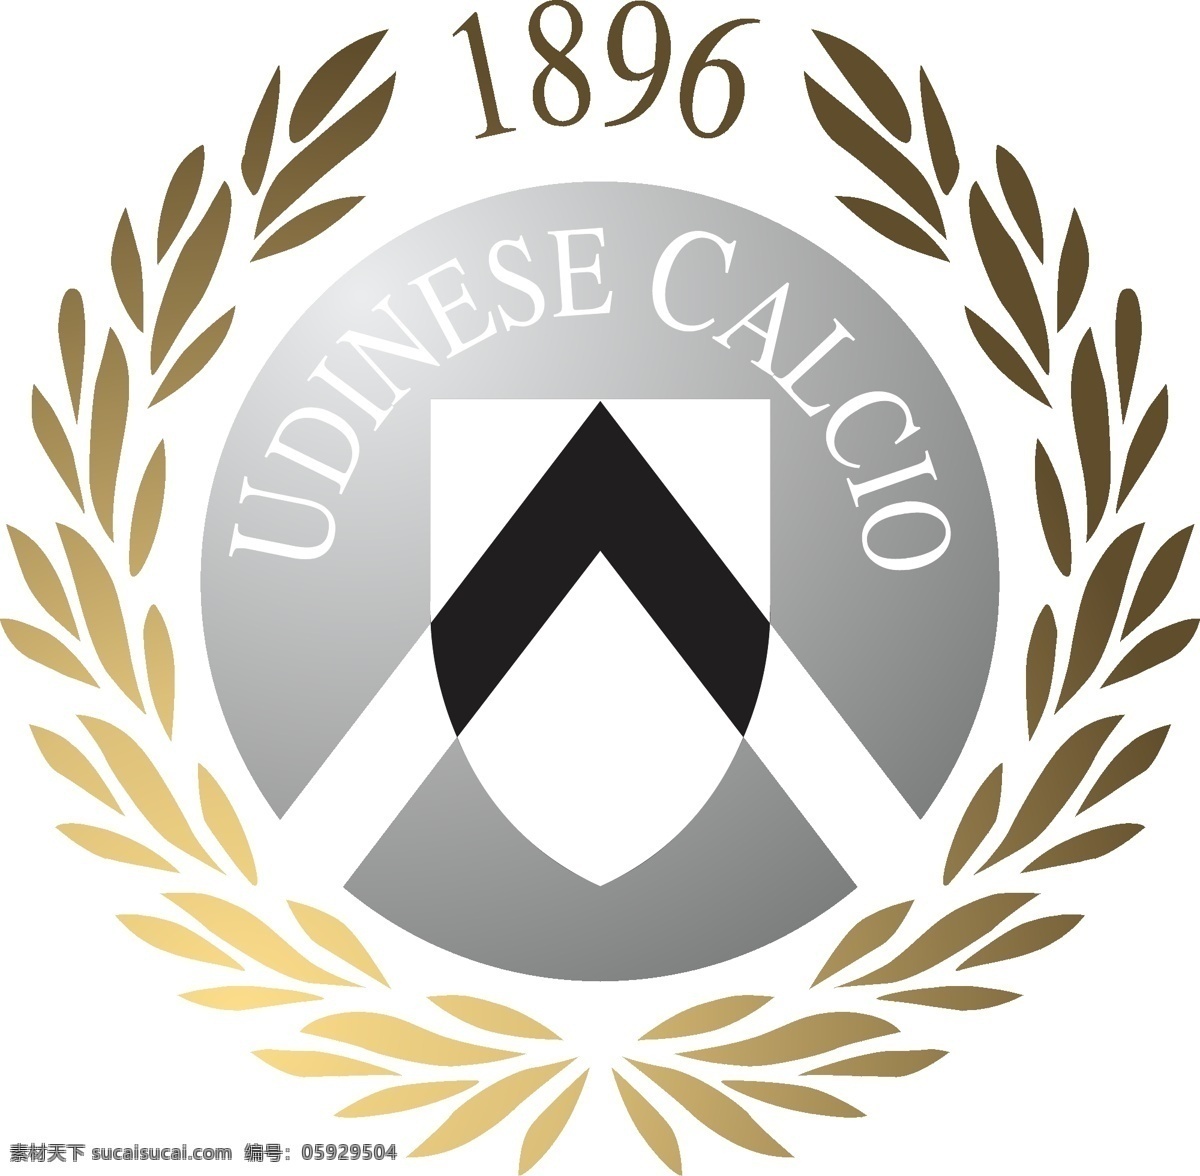 乌迪内斯 足球 俱乐部 徽标 logo设计 比赛 意大利 乌迪内 意甲 甲级 联赛 矢量图